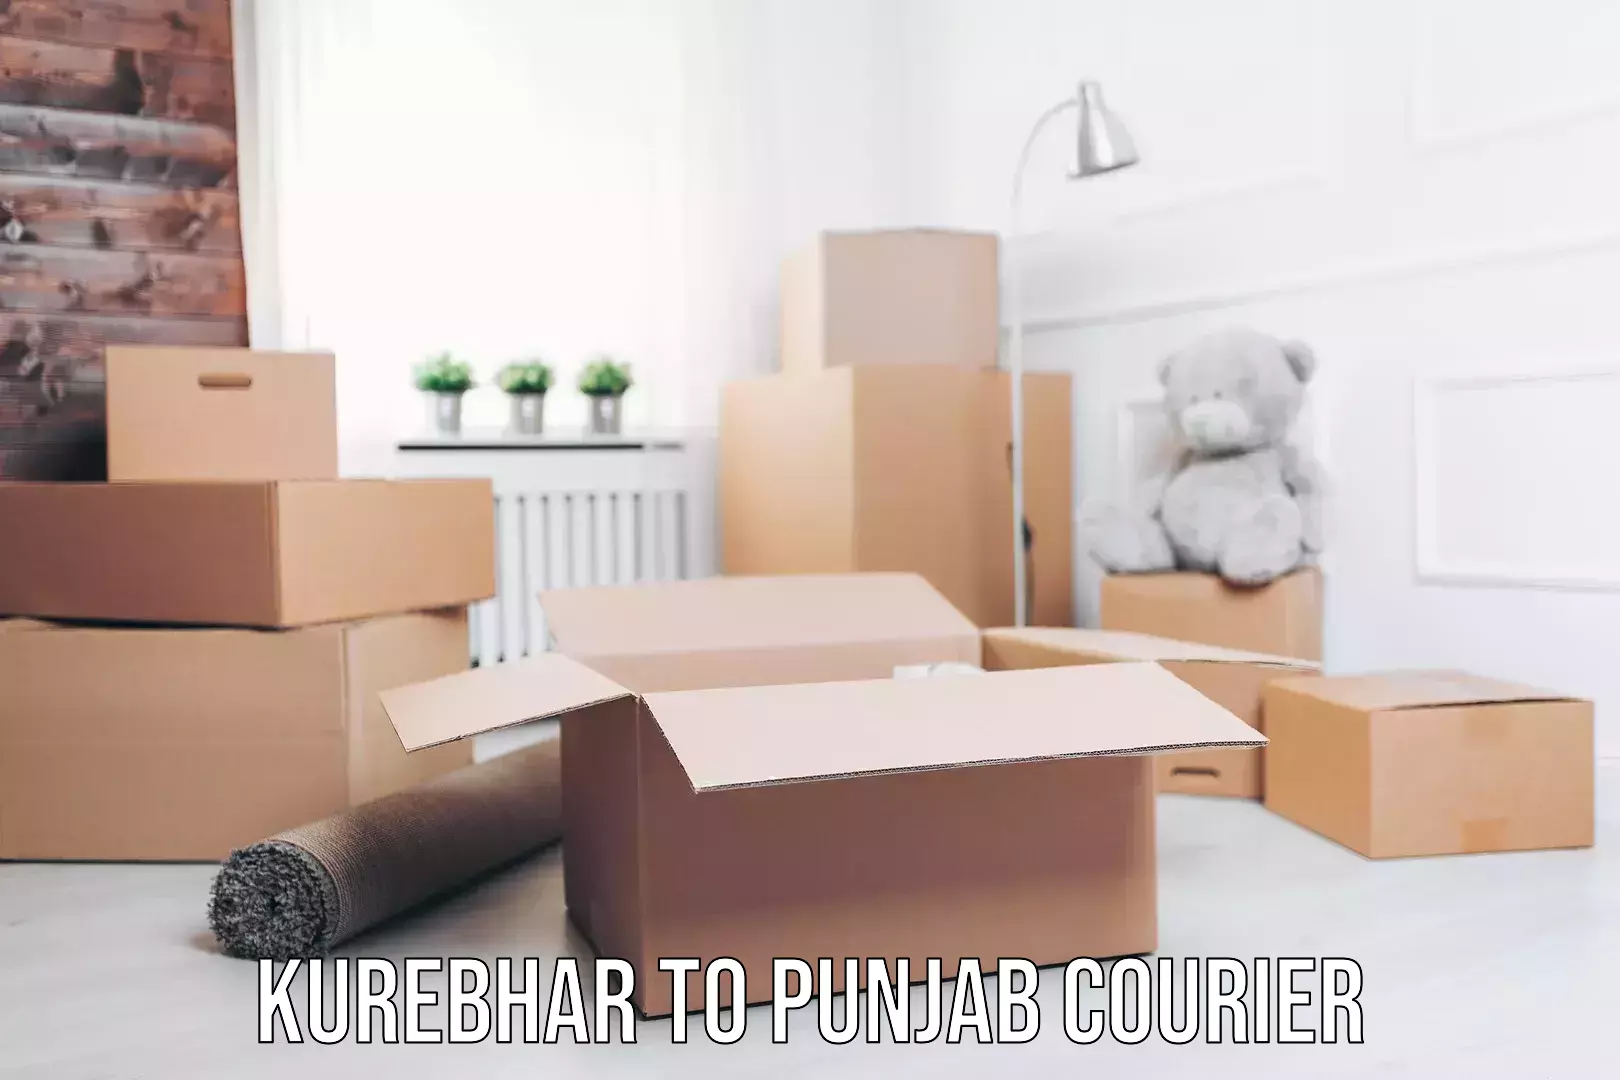 Skilled furniture transport Kurebhar to Punjab